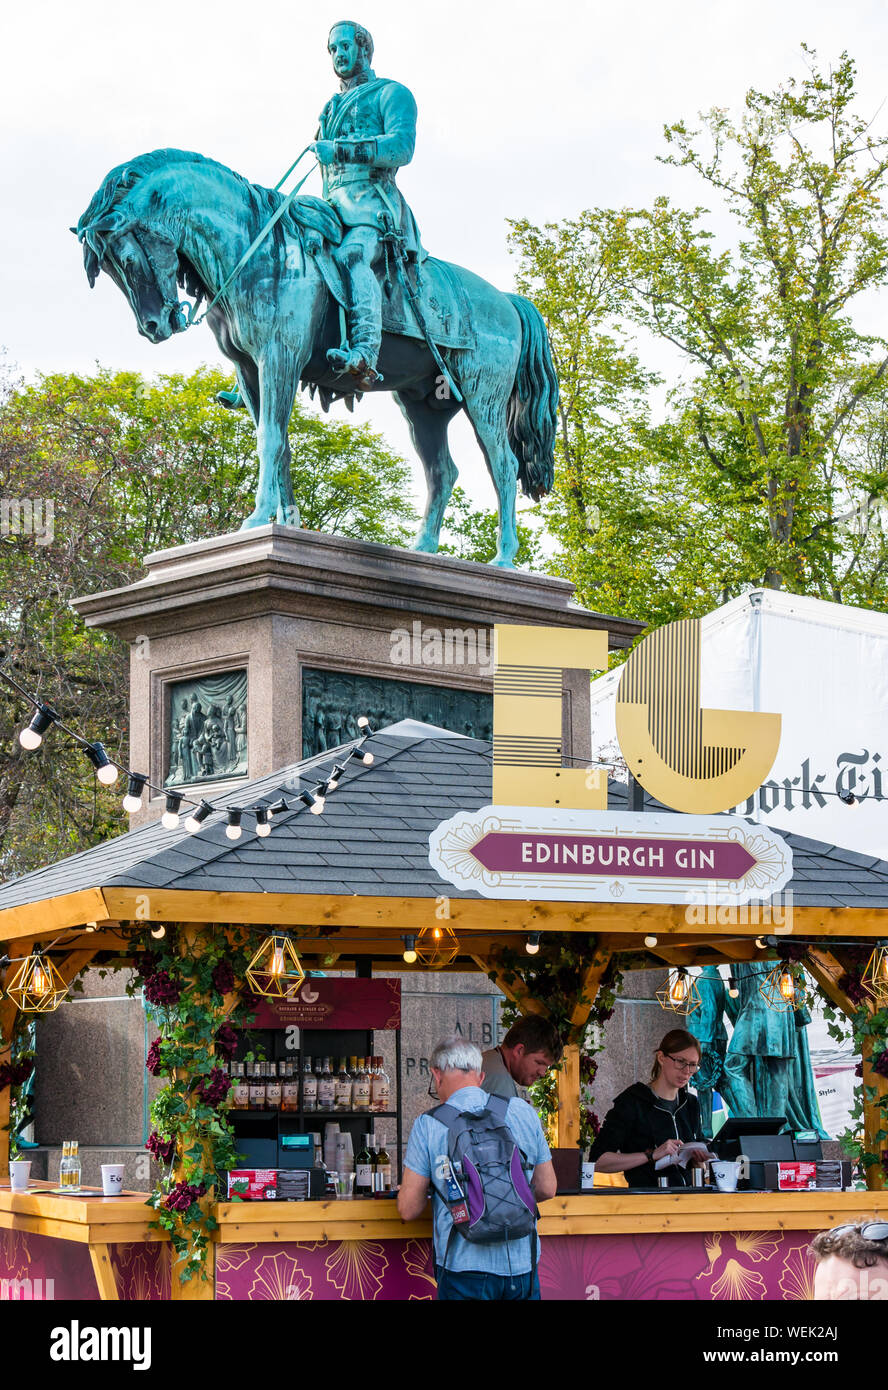 Menschen in Edinburgh Gin Bar mit Prinz Albert Statue, International Book Festival. Charlotte Square Garden, Schottland, Großbritannien Stockfoto